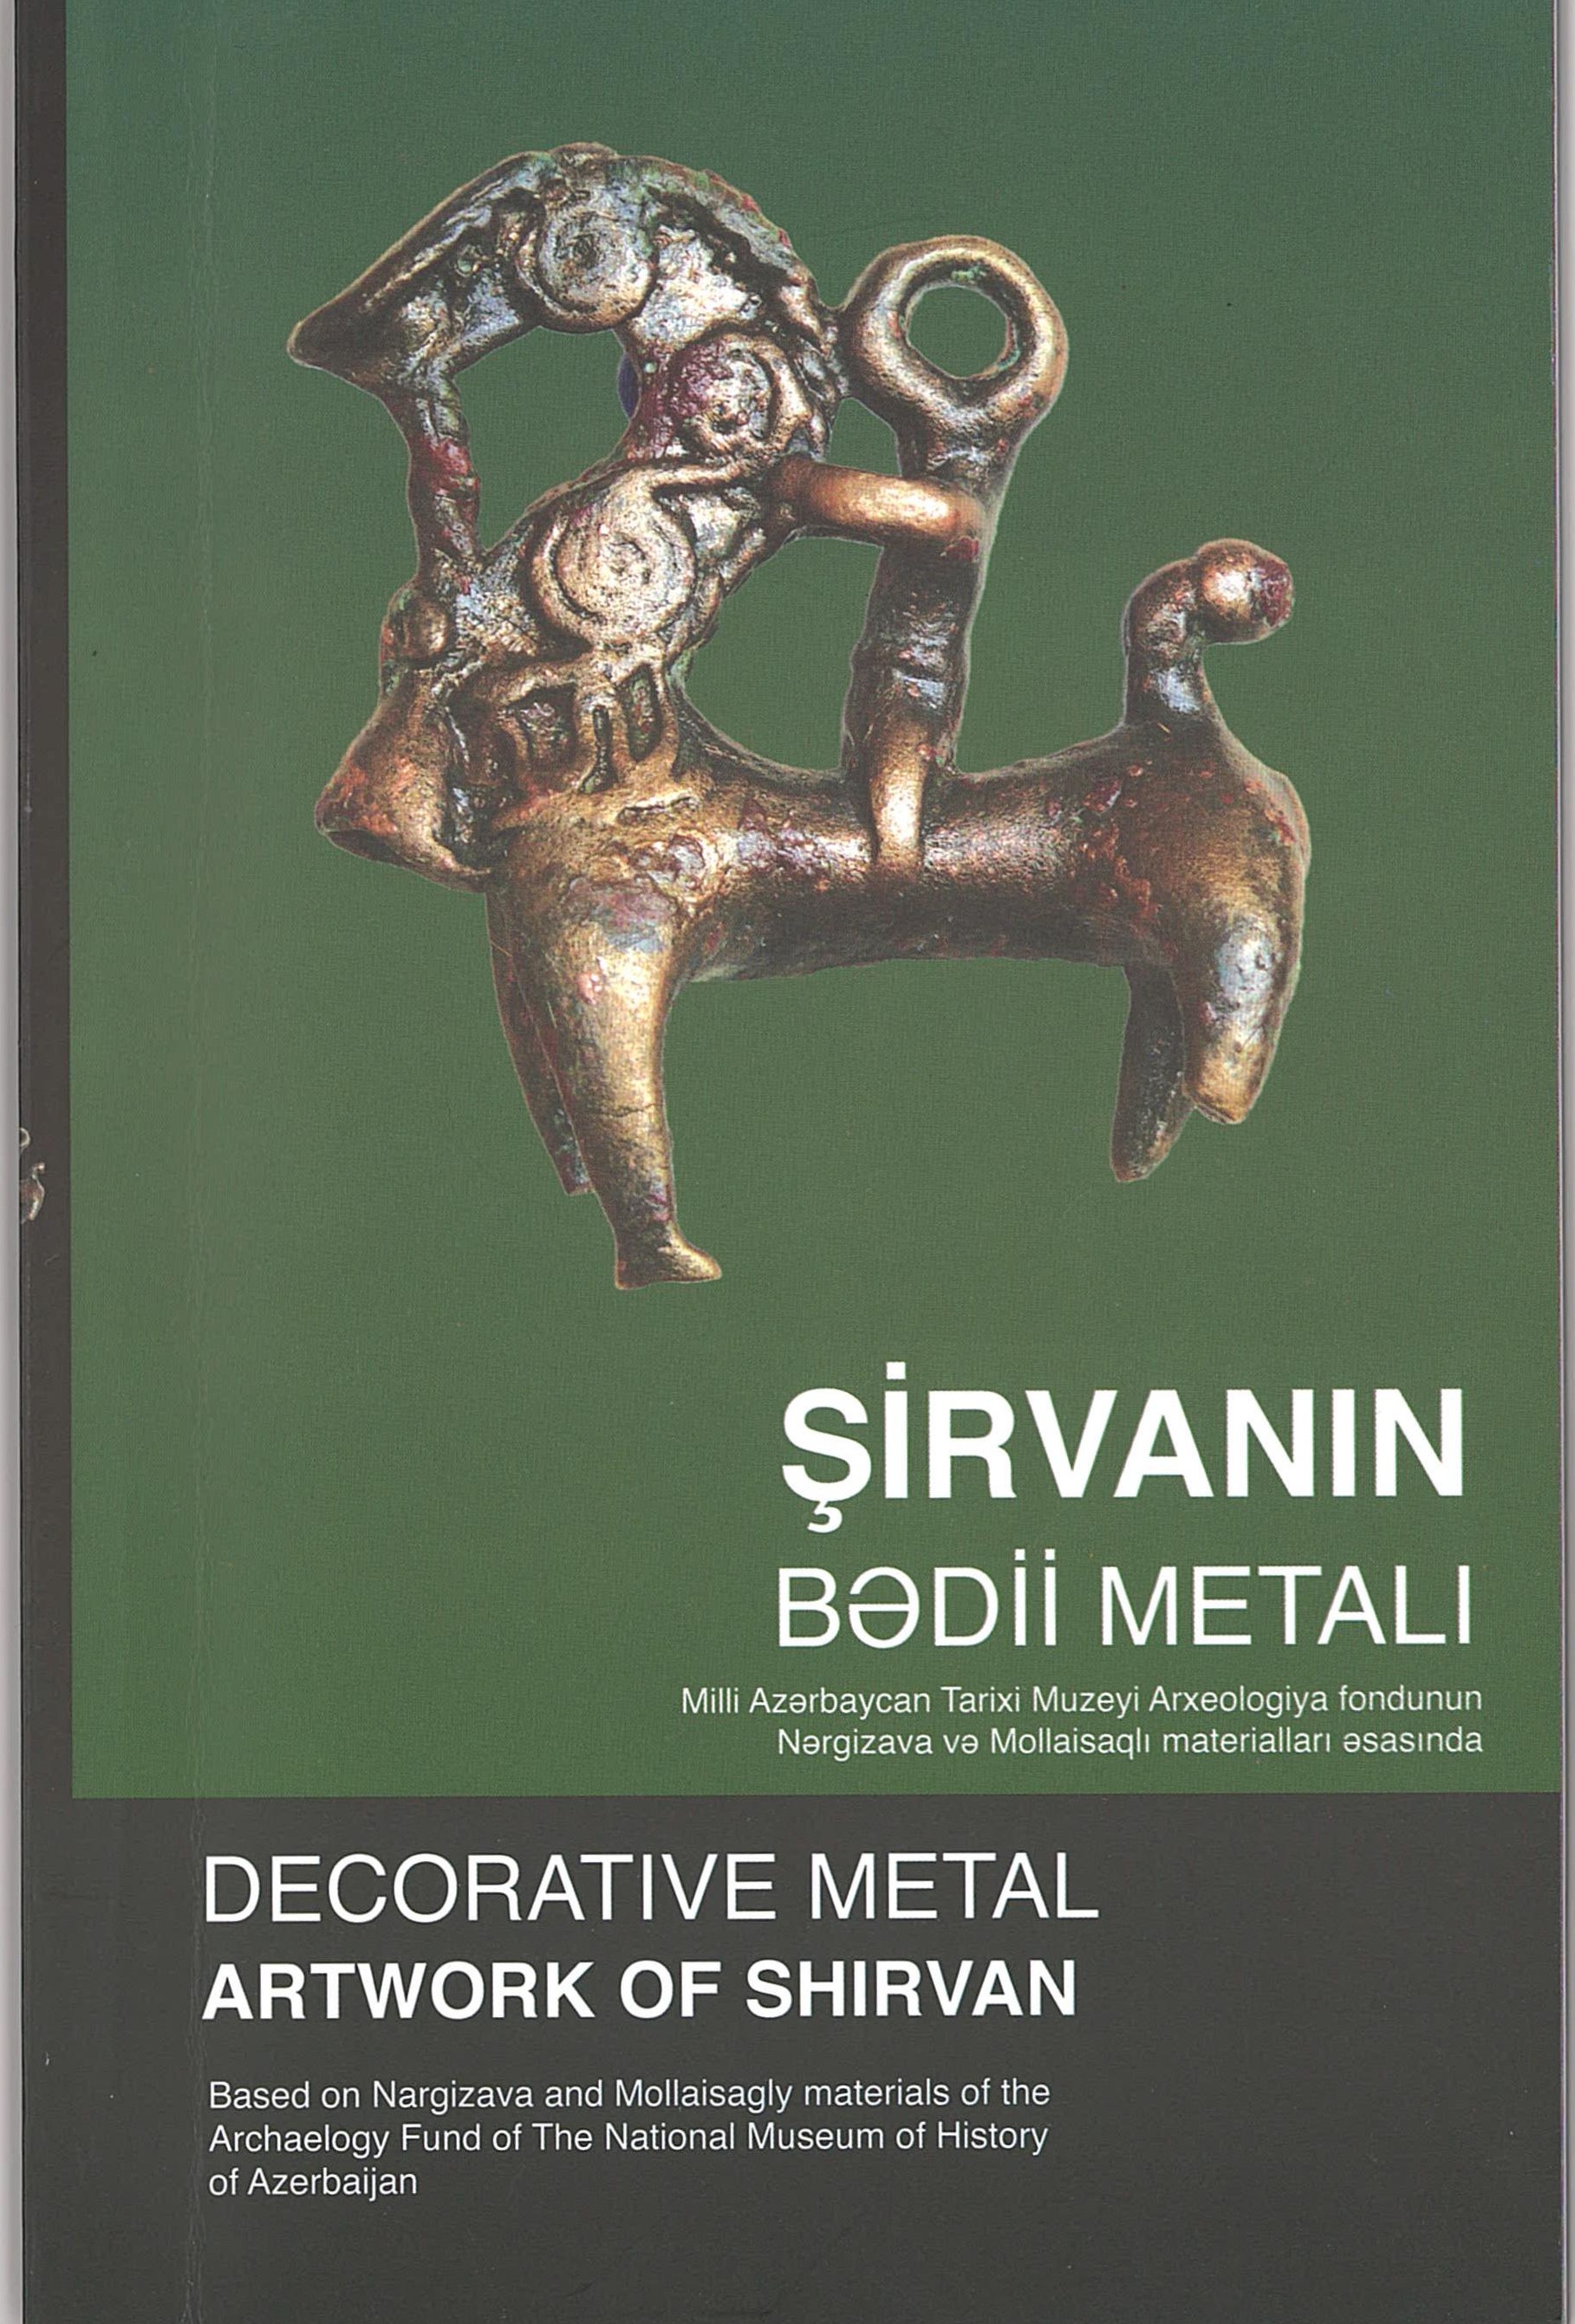  Decoratıve metal artwork of Shırvan